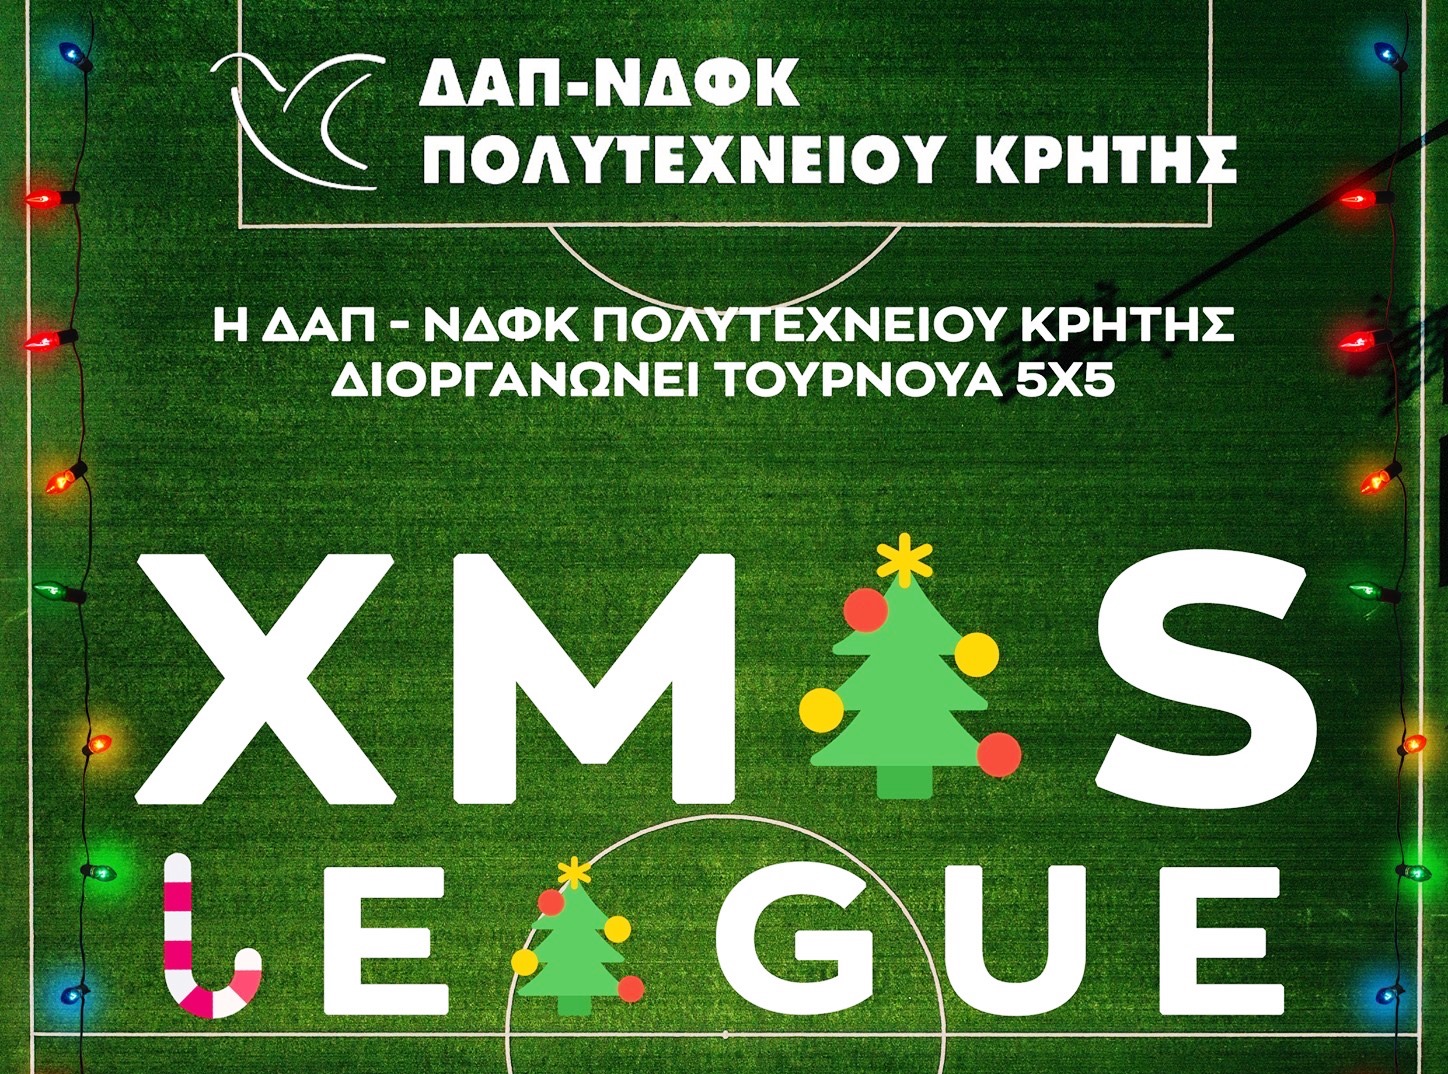 Φιλανθρωπικό τουρνουά ποδοσφαίρου απο την ΔΑΠ-ΝΔΦΚ Πολυτεχνείου Κρήτης